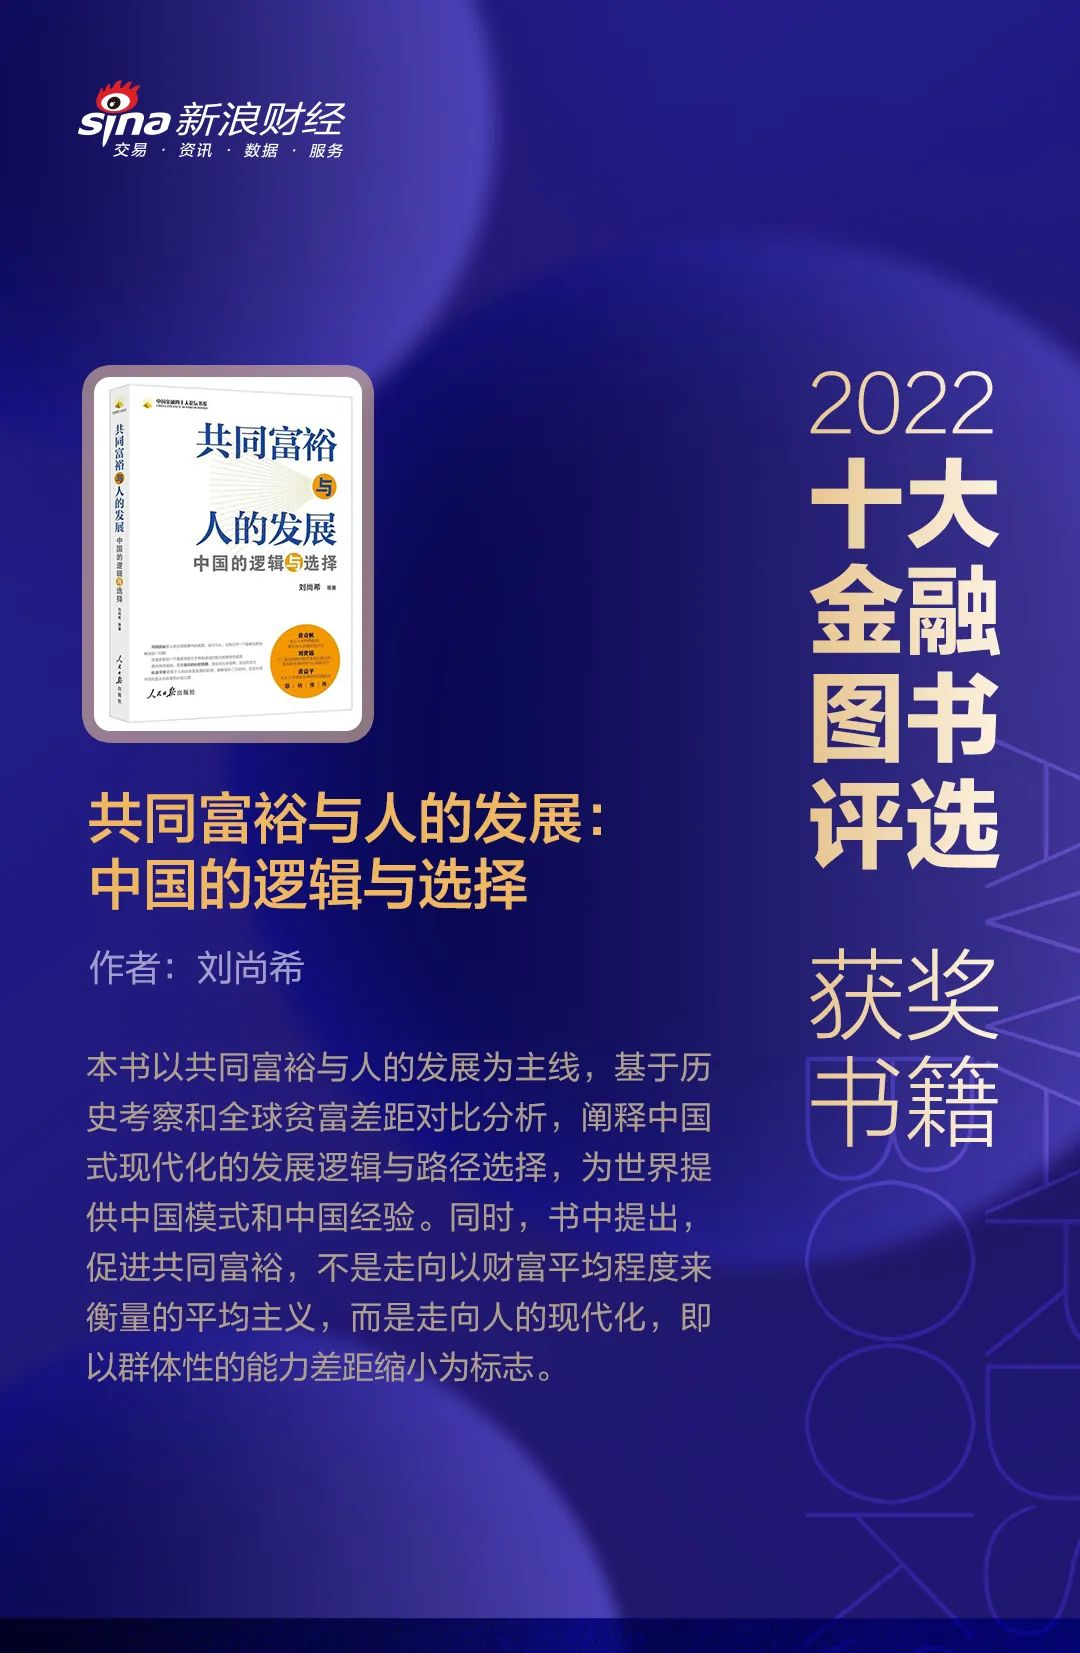 《共同富裕与人的发展：中国的逻辑与选择》获评2022十大金融图书